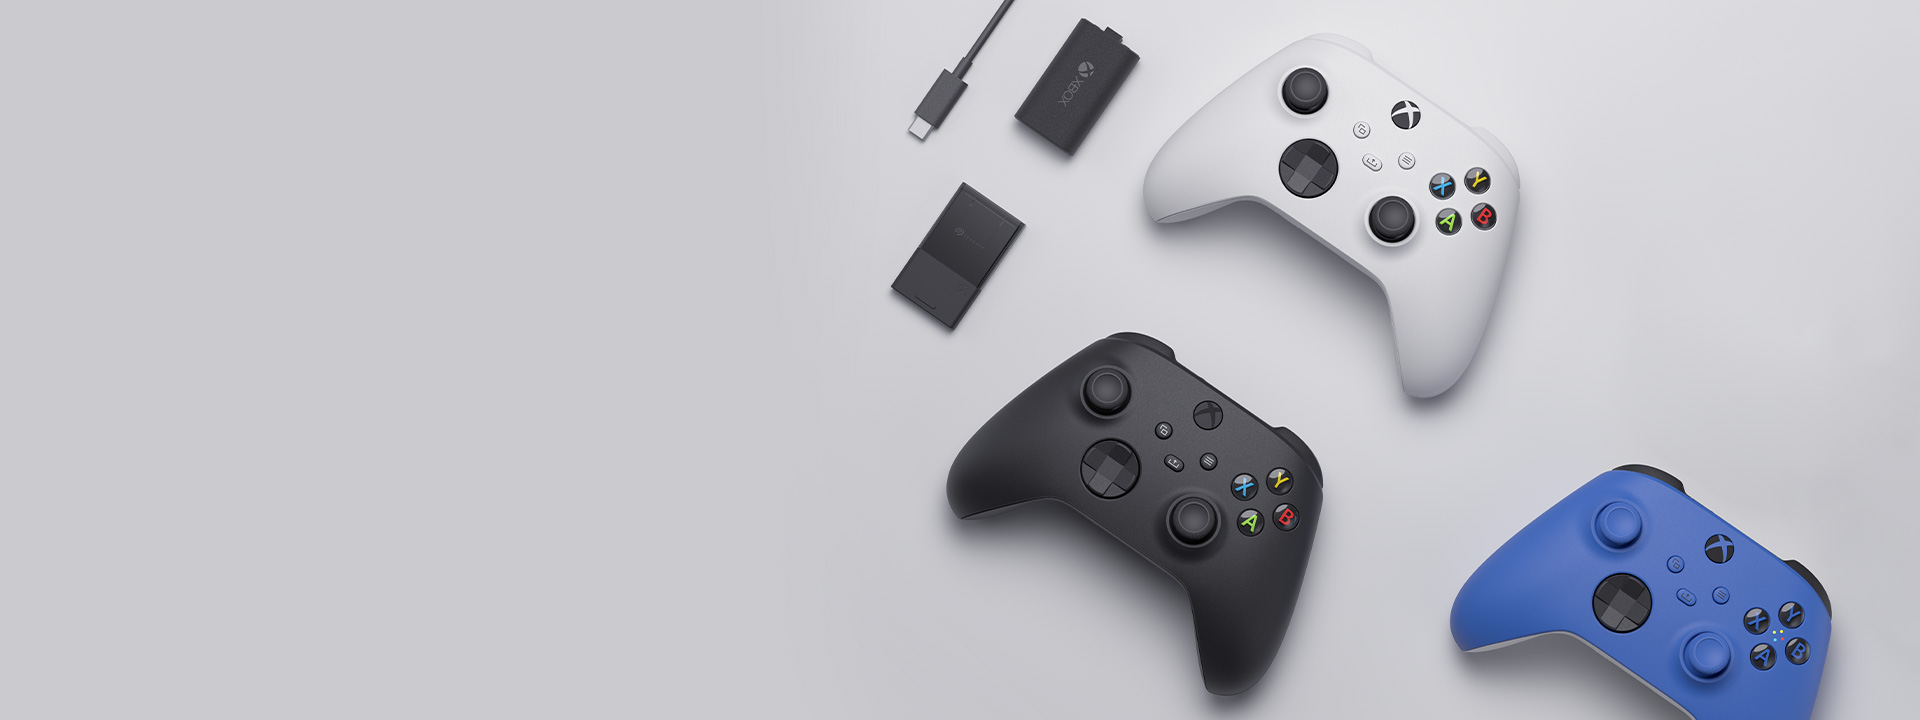 Rôzne príslušenstvo pre Xbox vrátane bezdrôtového ovládača Xbox, súpravy Play and Charge a karty Seagate na rozšírenie úložiska pre Xbox Series X|S usporiadané vedľa seba.